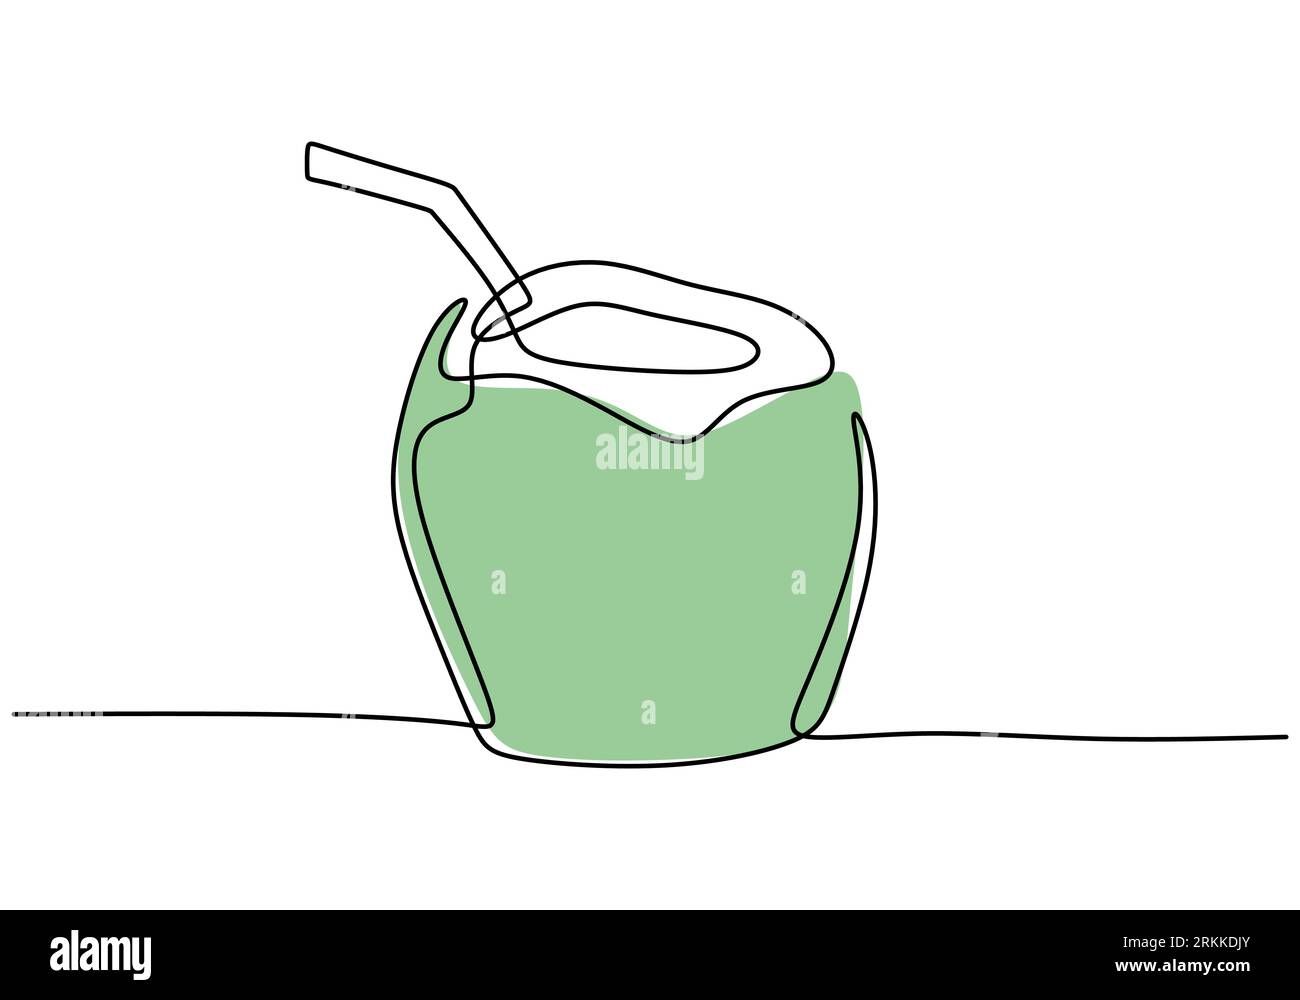 Continu une ligne tirant la boisson verte de l'eau de coco avec la paille à boire. Menu de desserts et de boissons d'été. Soulage la soif et la déshydratation à summ Illustration de Vecteur